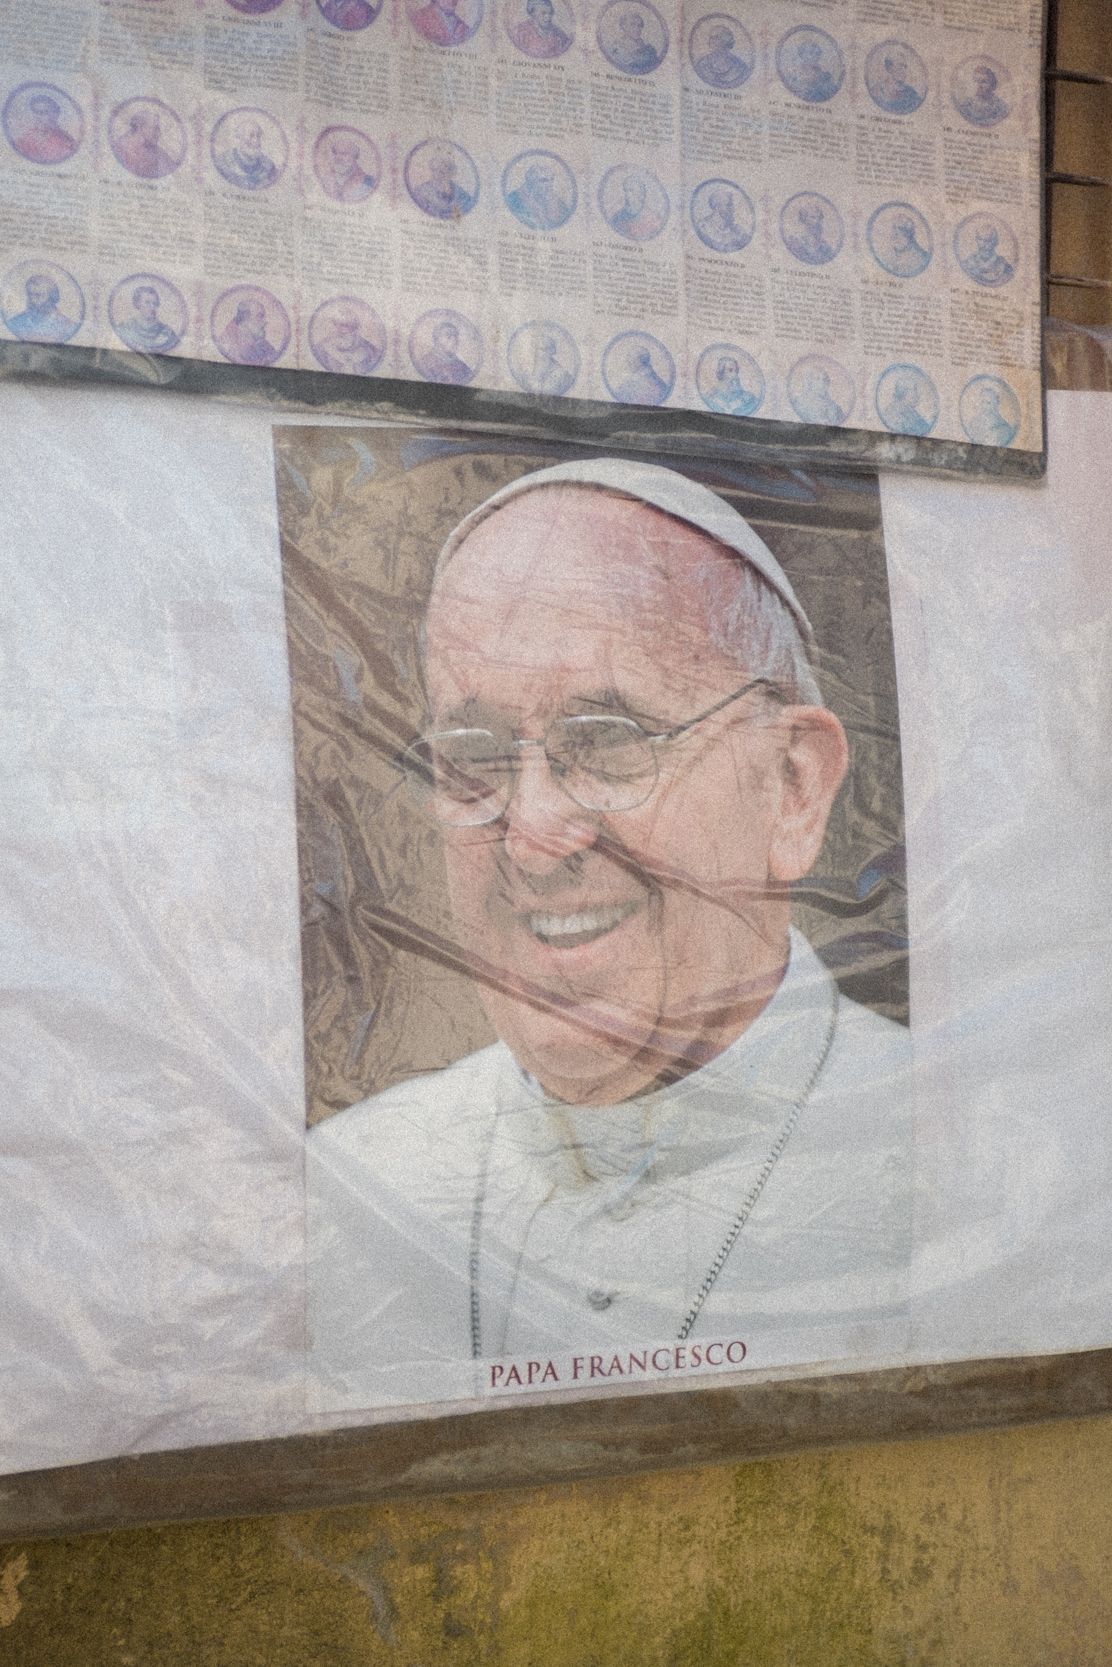 Devotionalien des Papstes Papa Francesco, zu deutsch Papst Franziskus, können in der Umgebung des Vatikan überall gekauft werden. Hier ist das Porträt von Papst Franziskus auf einem Kalender Cover zu sehen.